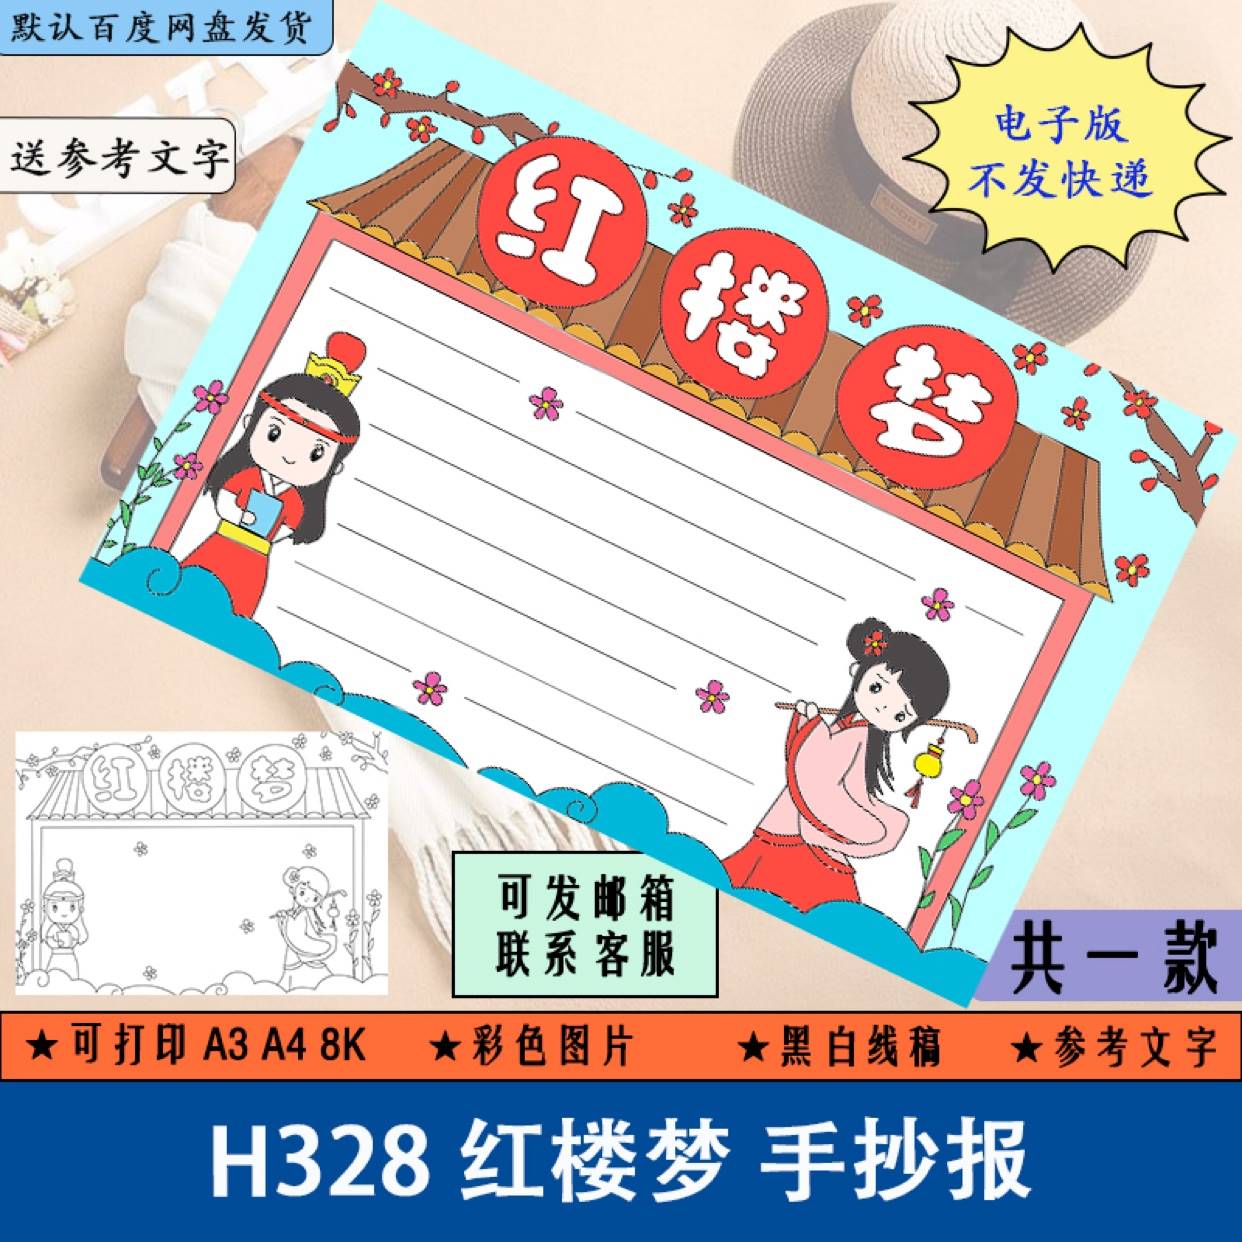 H328红楼梦手抄报模板电子版小学生四大名著手抄报半成品线稿涂色